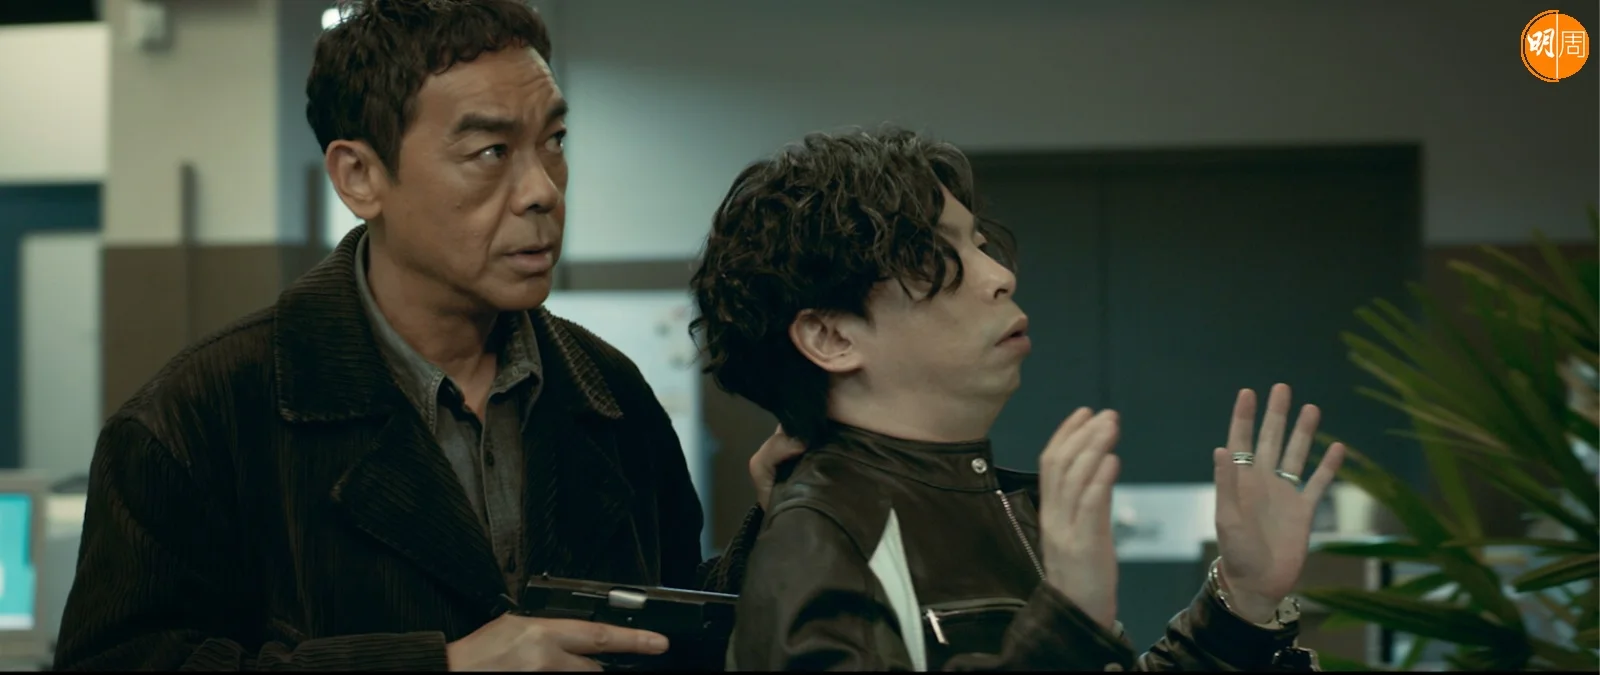 劉青雲飾演的談判專家卓文偉意外變身為大膽綁匪。